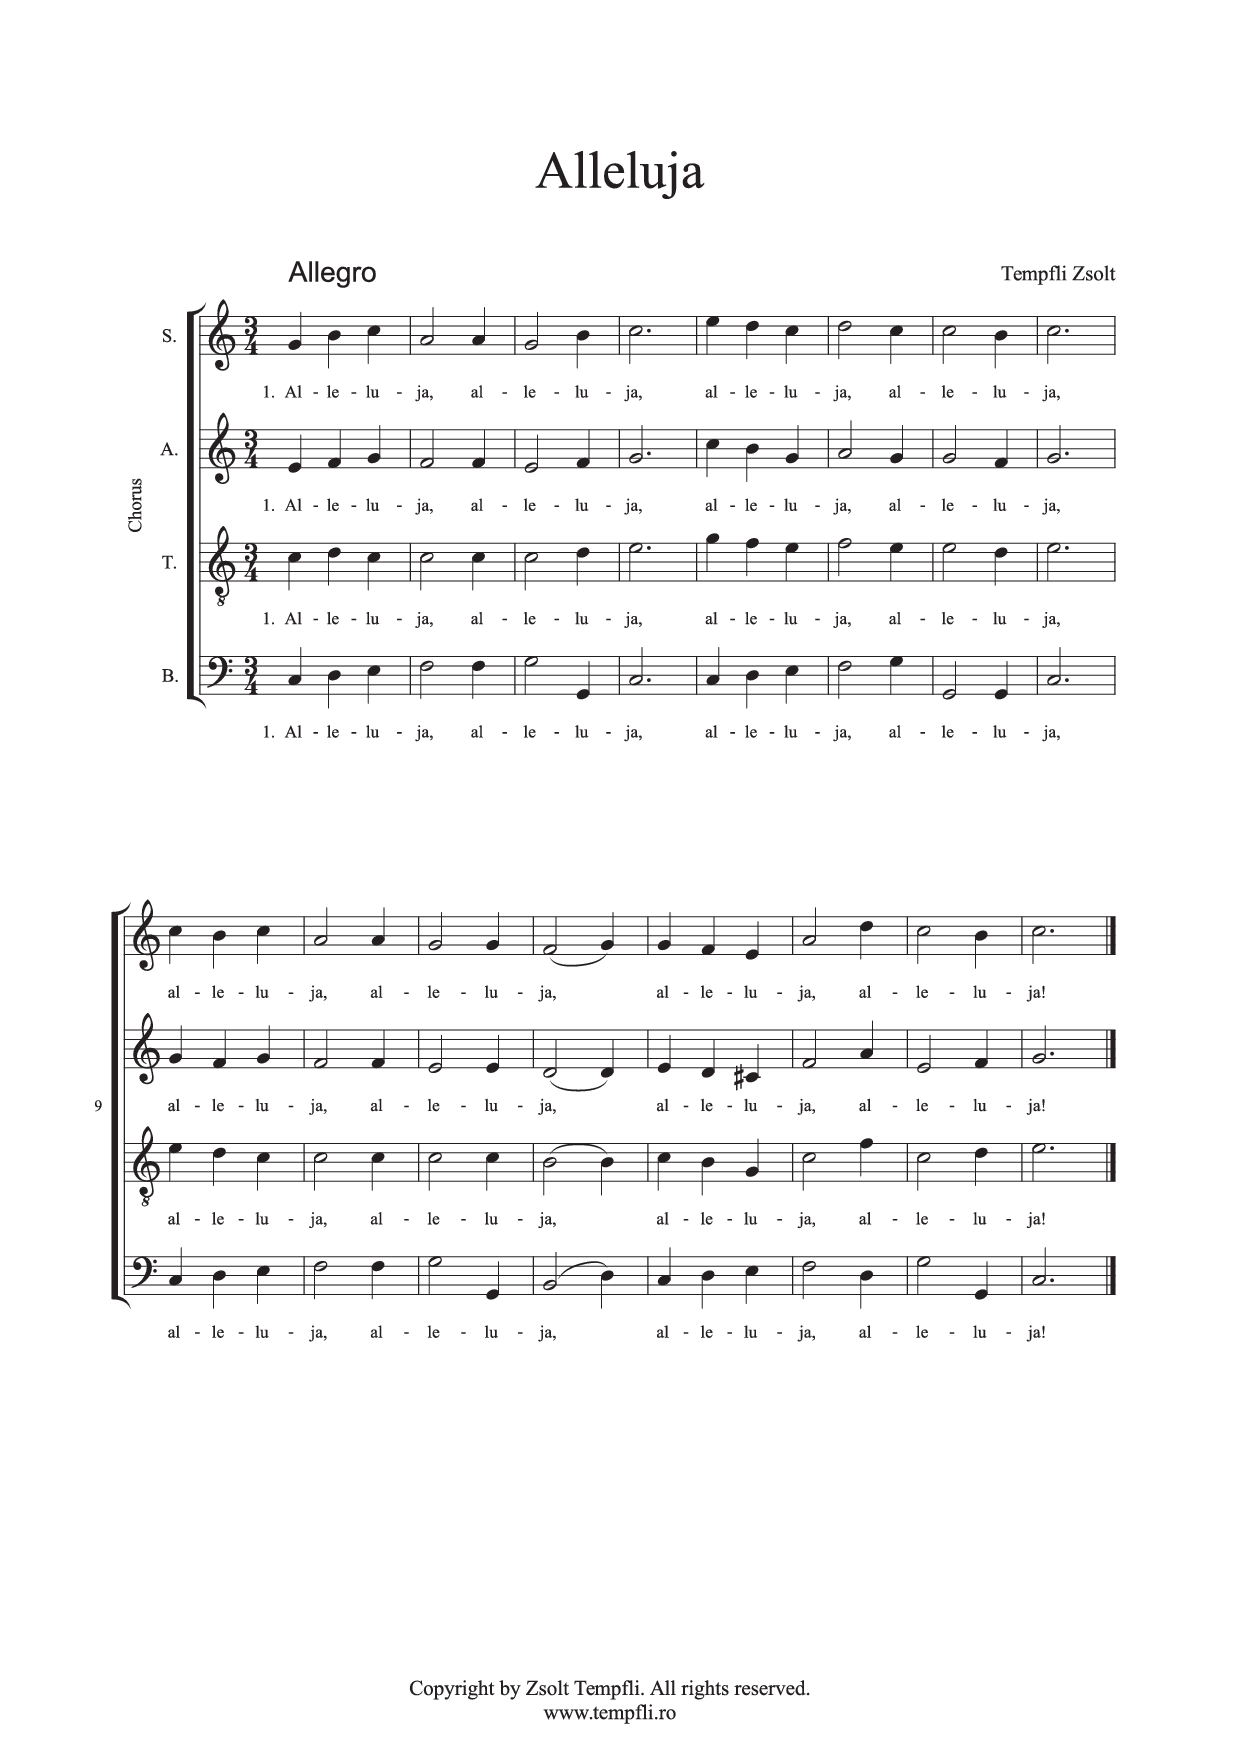 Tempfli Zsolt: Allelúja vegyeskarra (SATB) op. 16